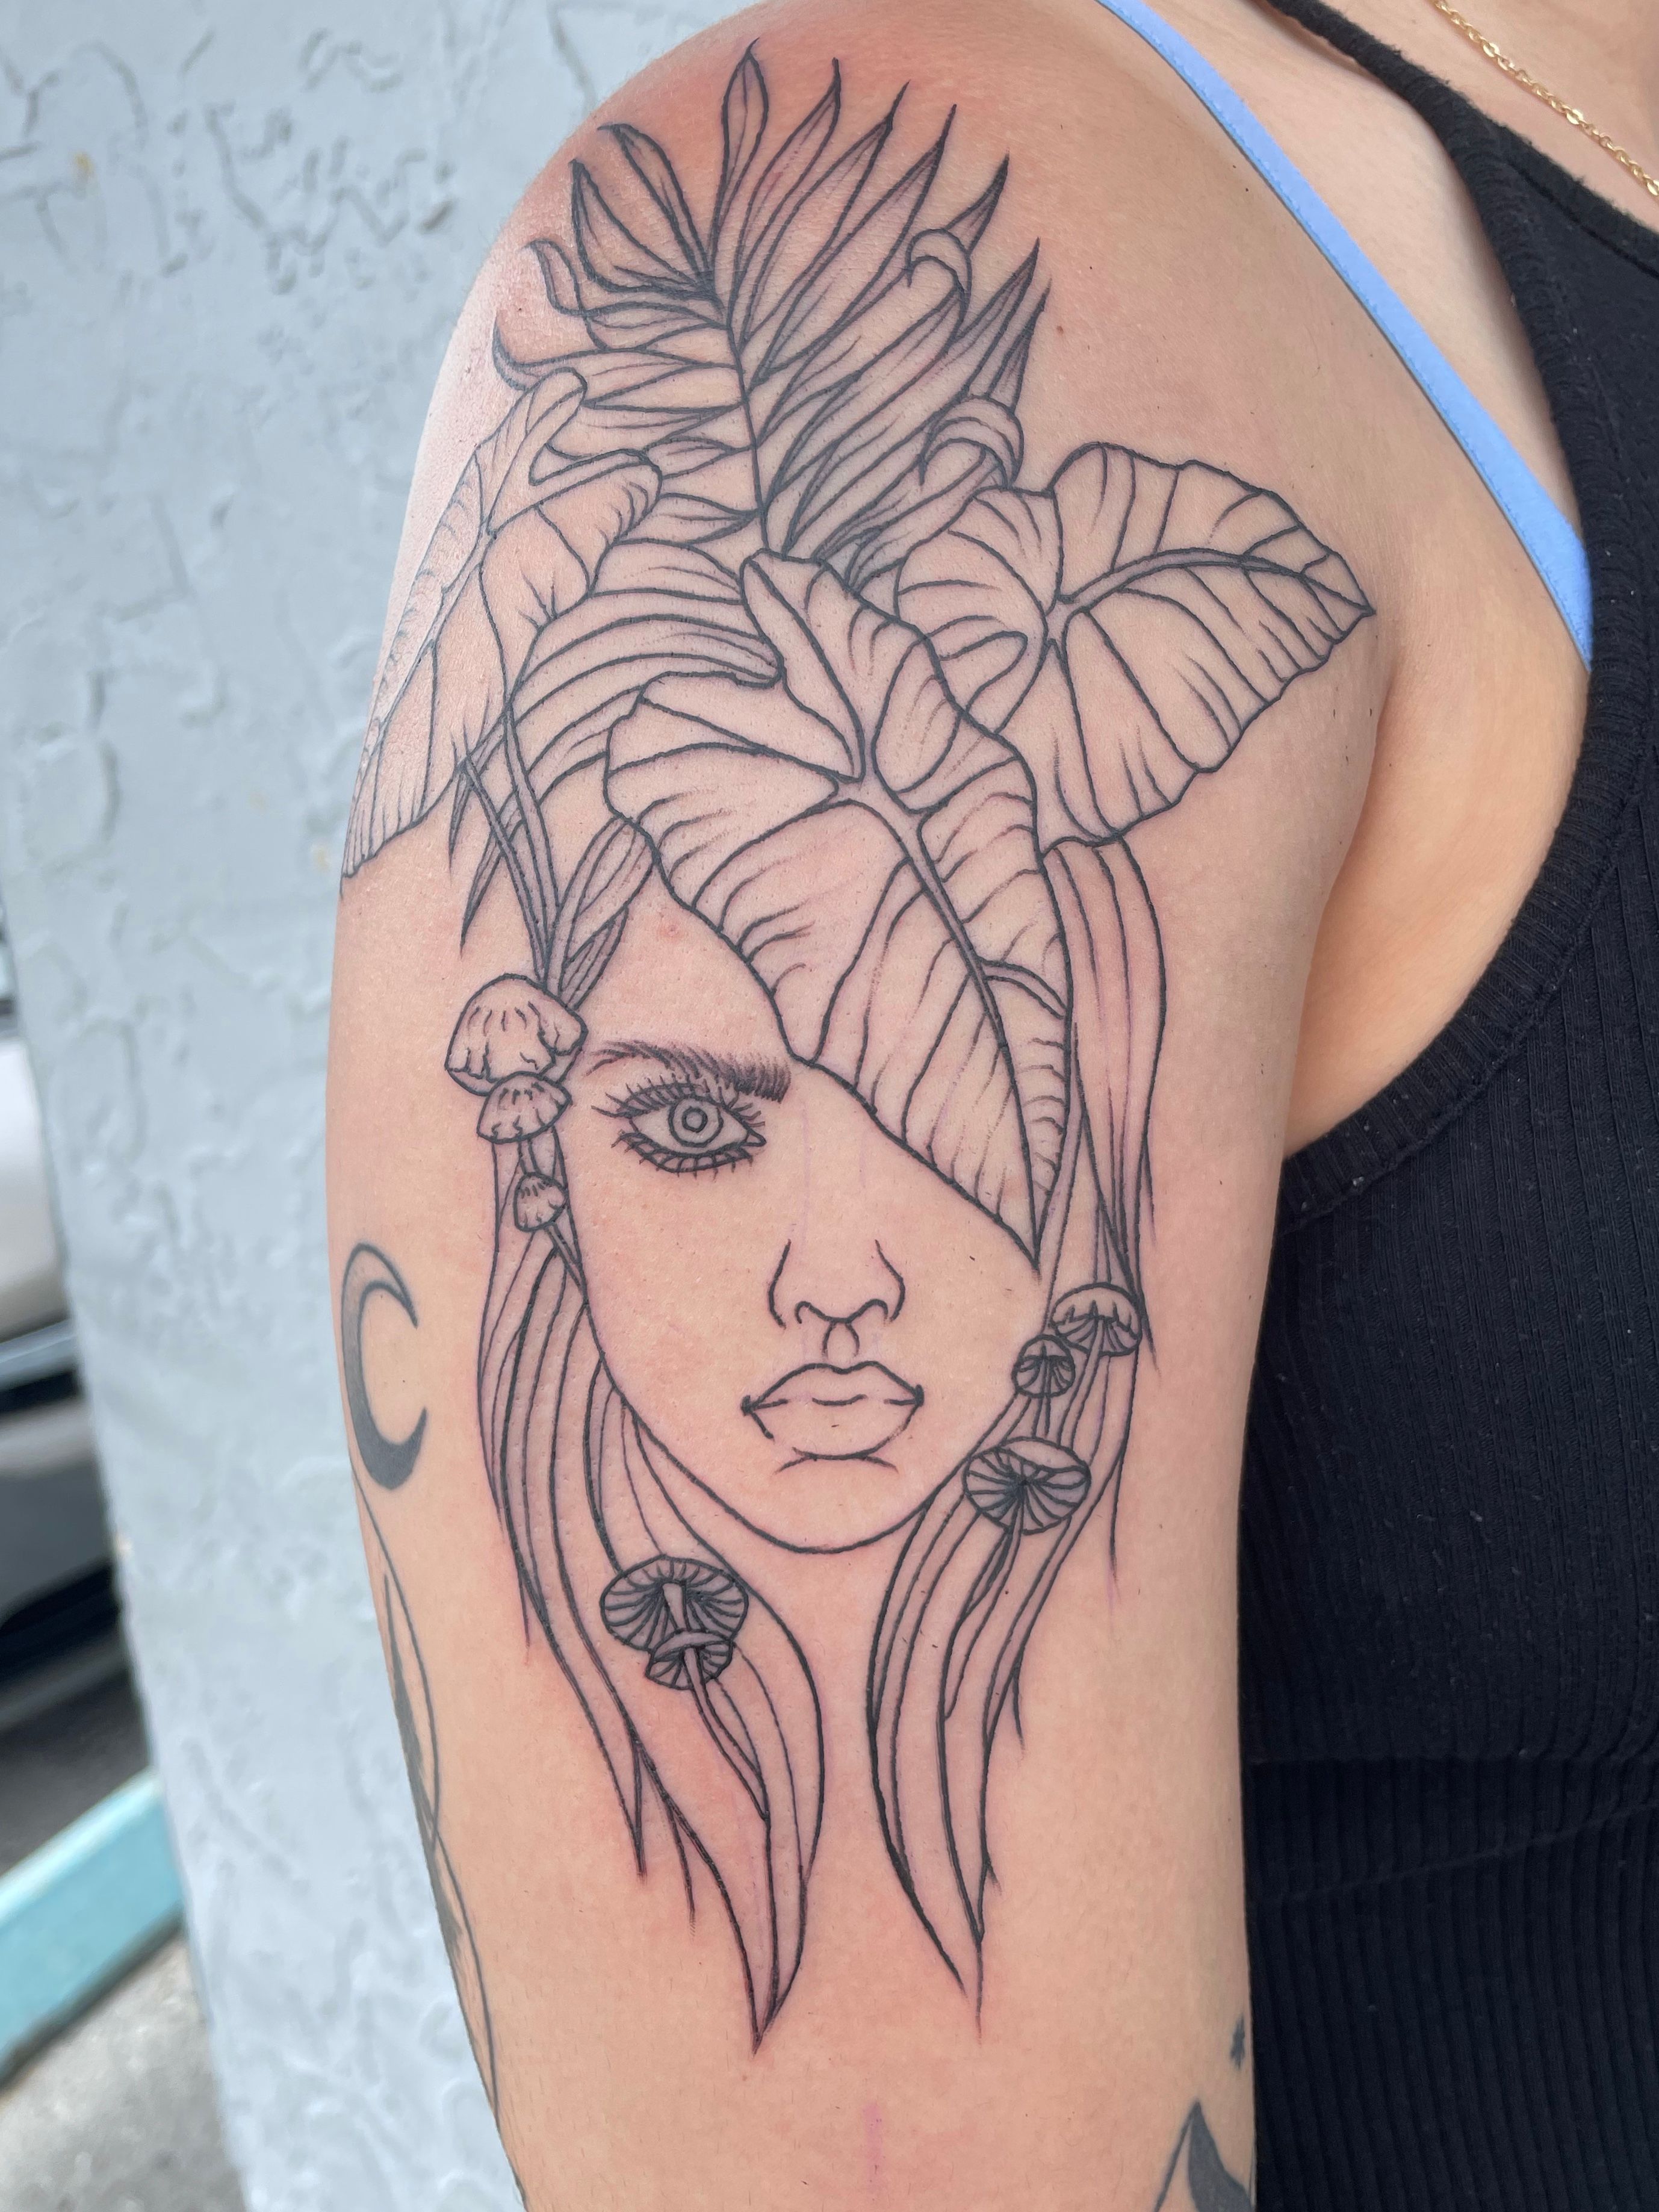 Tattoo Studio in Tampa Bay, Florida